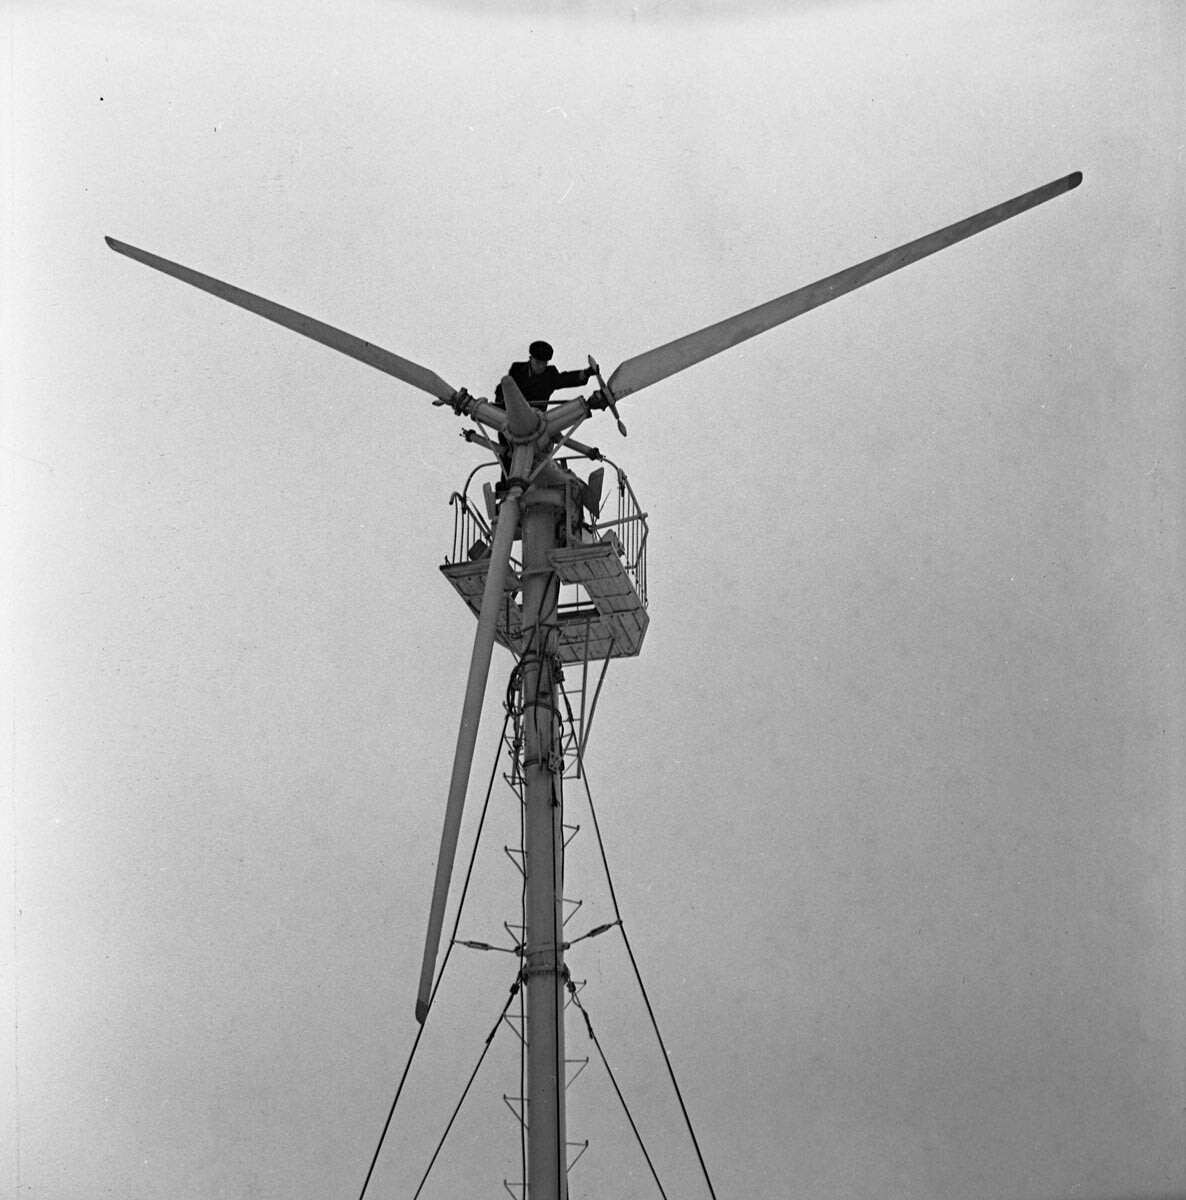 Calmucchia. Turbina eolica di Sokol, 1977

